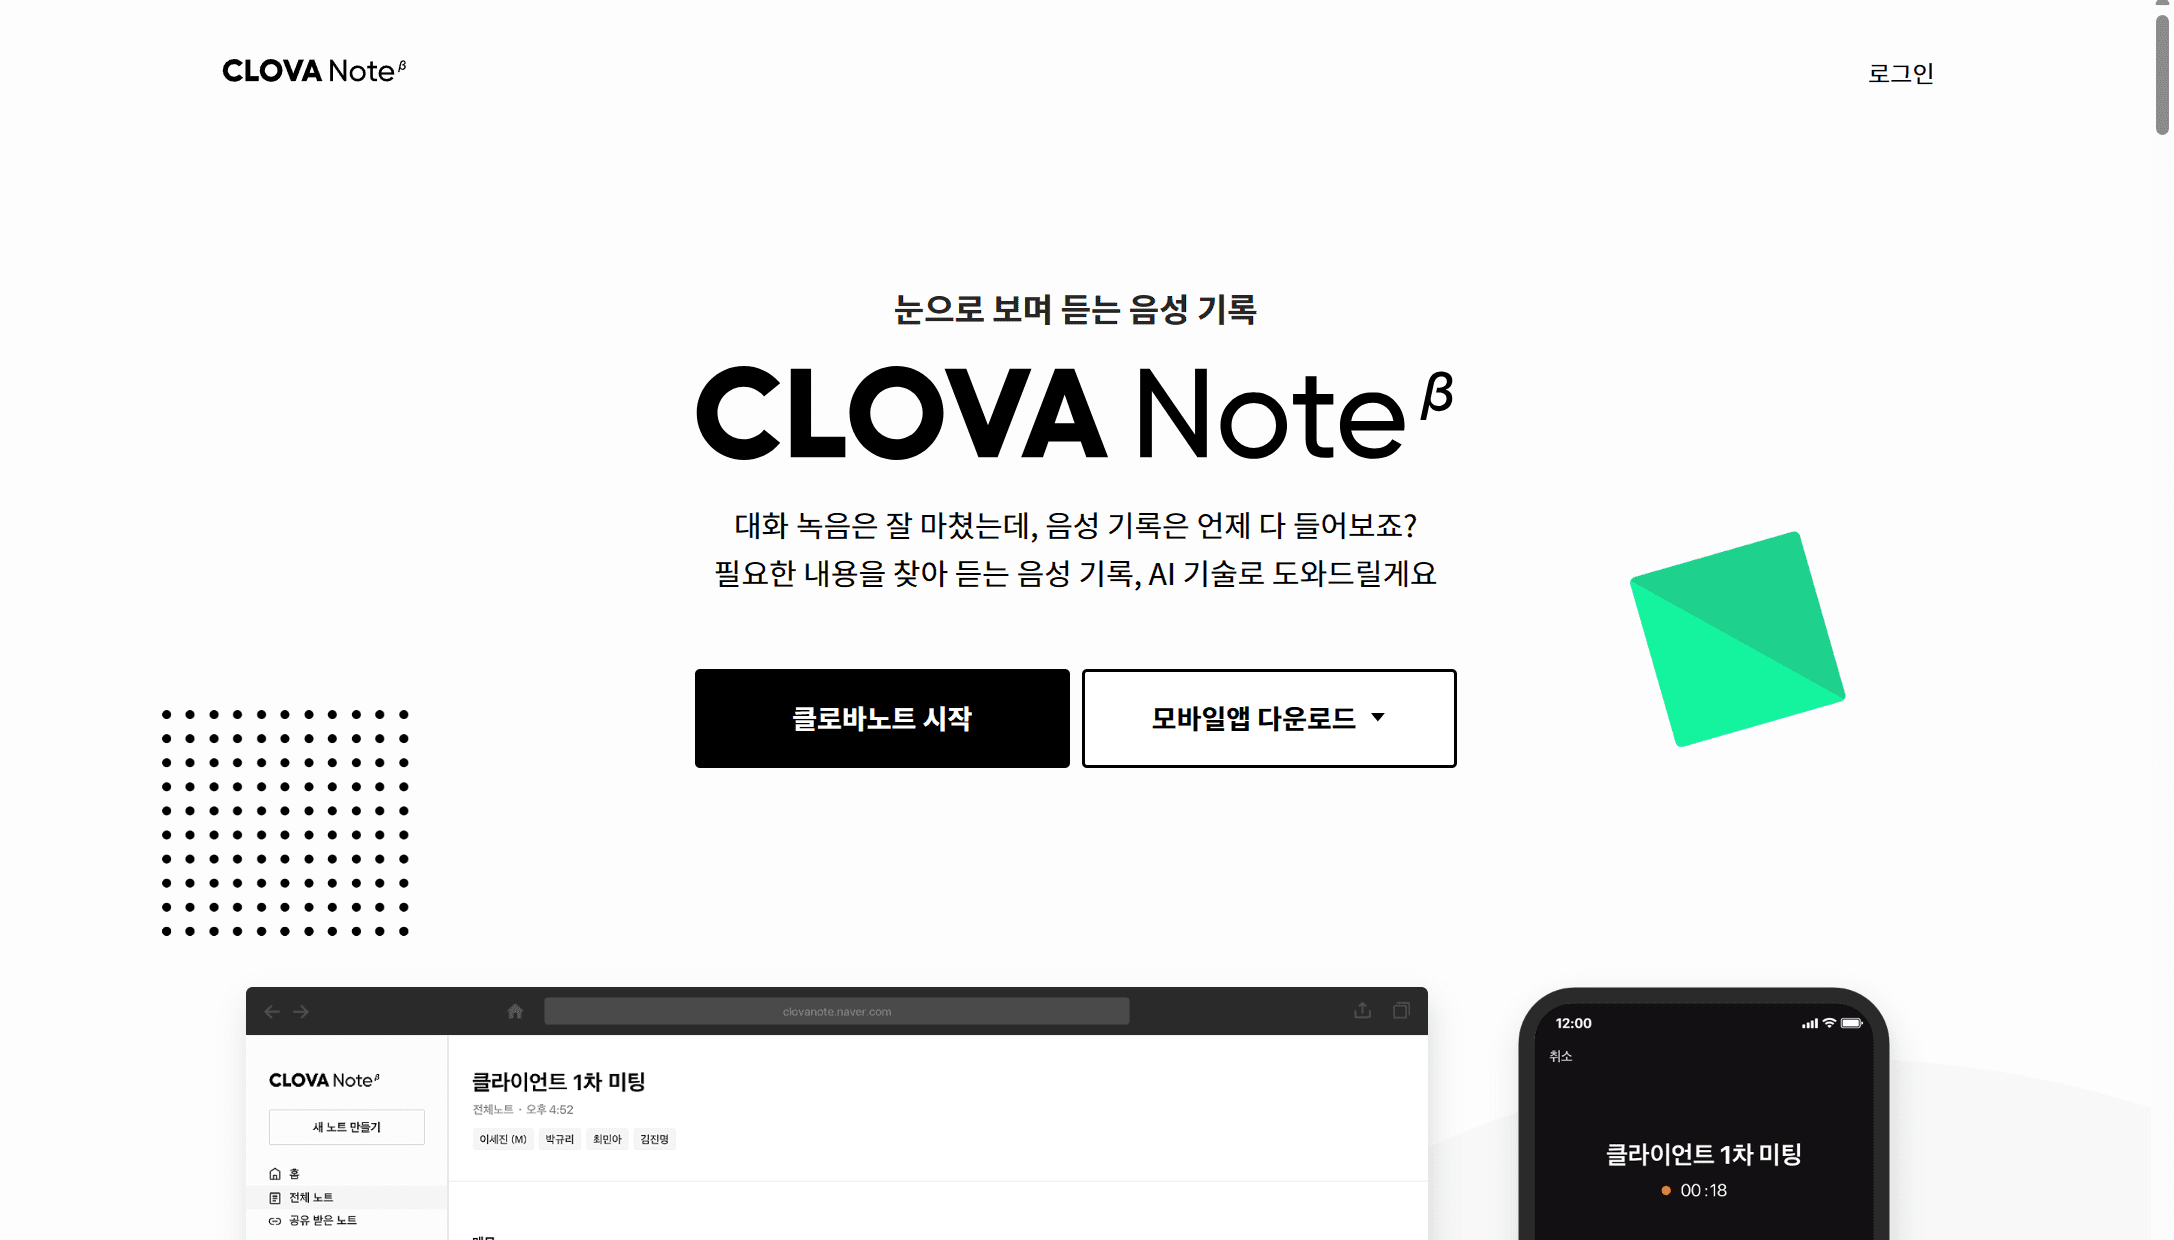 Clova Note ist ein leistungsstarkes Tool zur Transkription von koreanischen Meetings